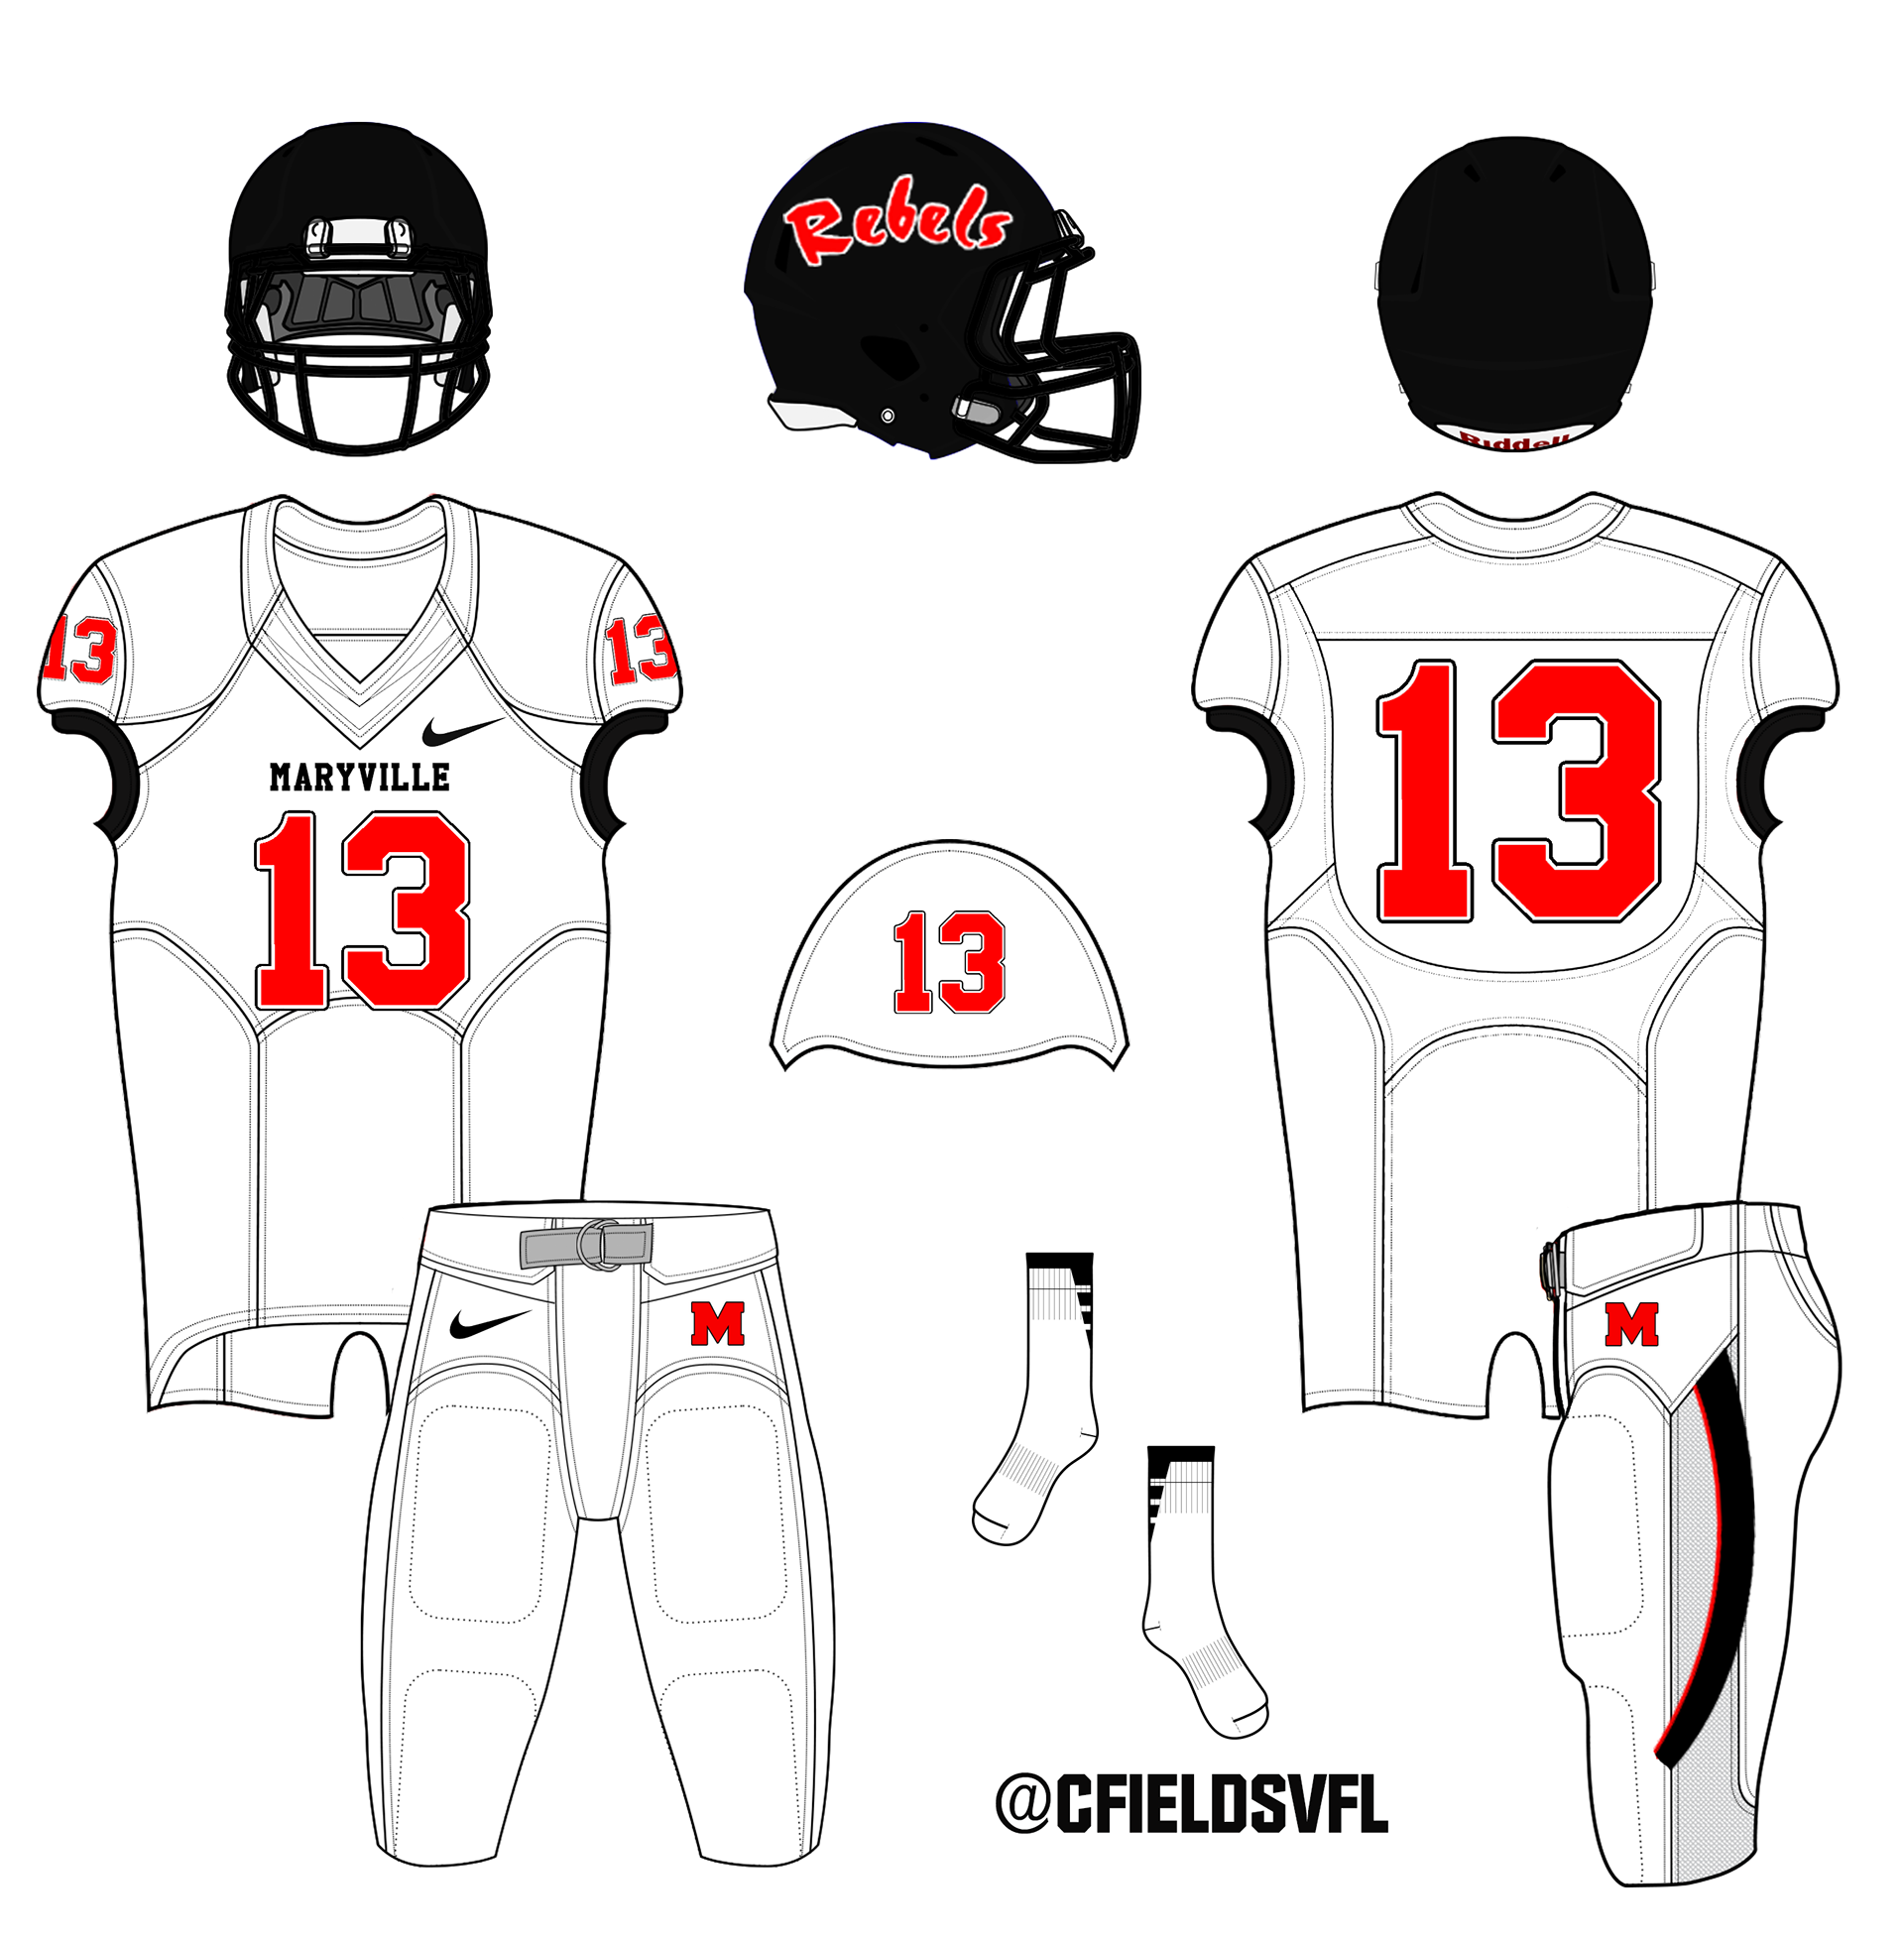 Chad Fields - NFL Uniform Redesigns